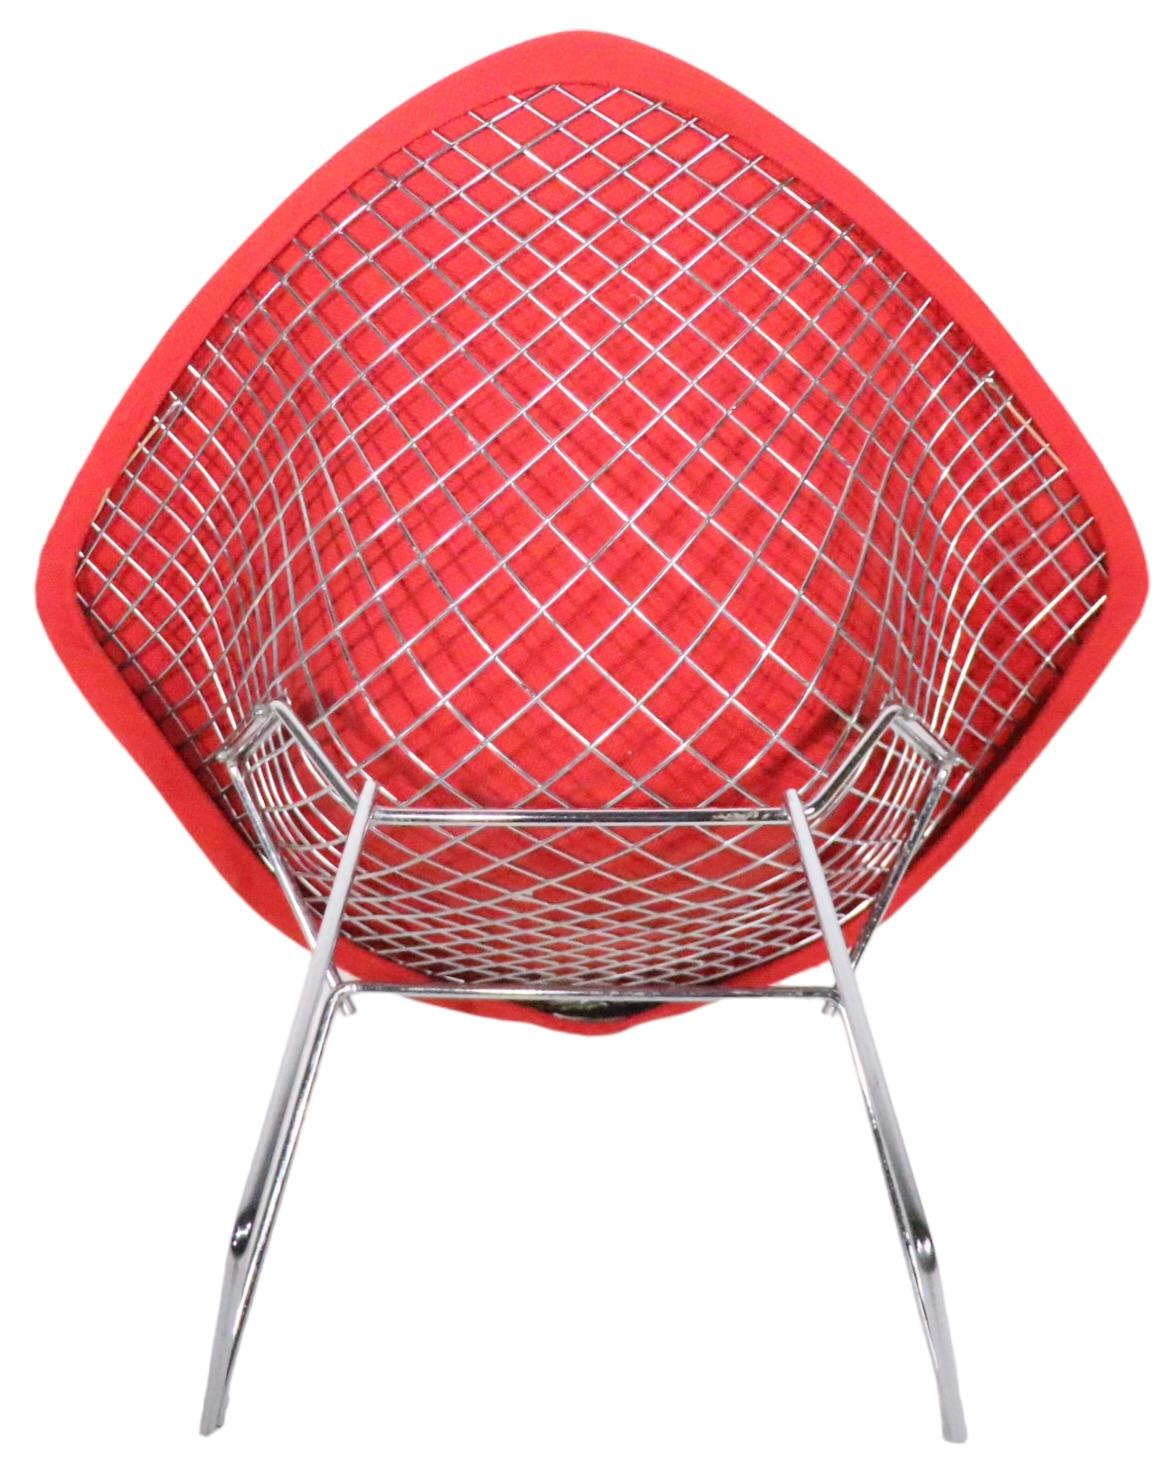 L'emblématique chaise Diamond conçue par Harry Bertoia pour Knoll. Cet exemplaire a été exécuté dans la finition chromée et est livré avec sa housse d'origine Knoll à pad complet (un peu croustillante mais pas usée). La chaise conserve des vestiges